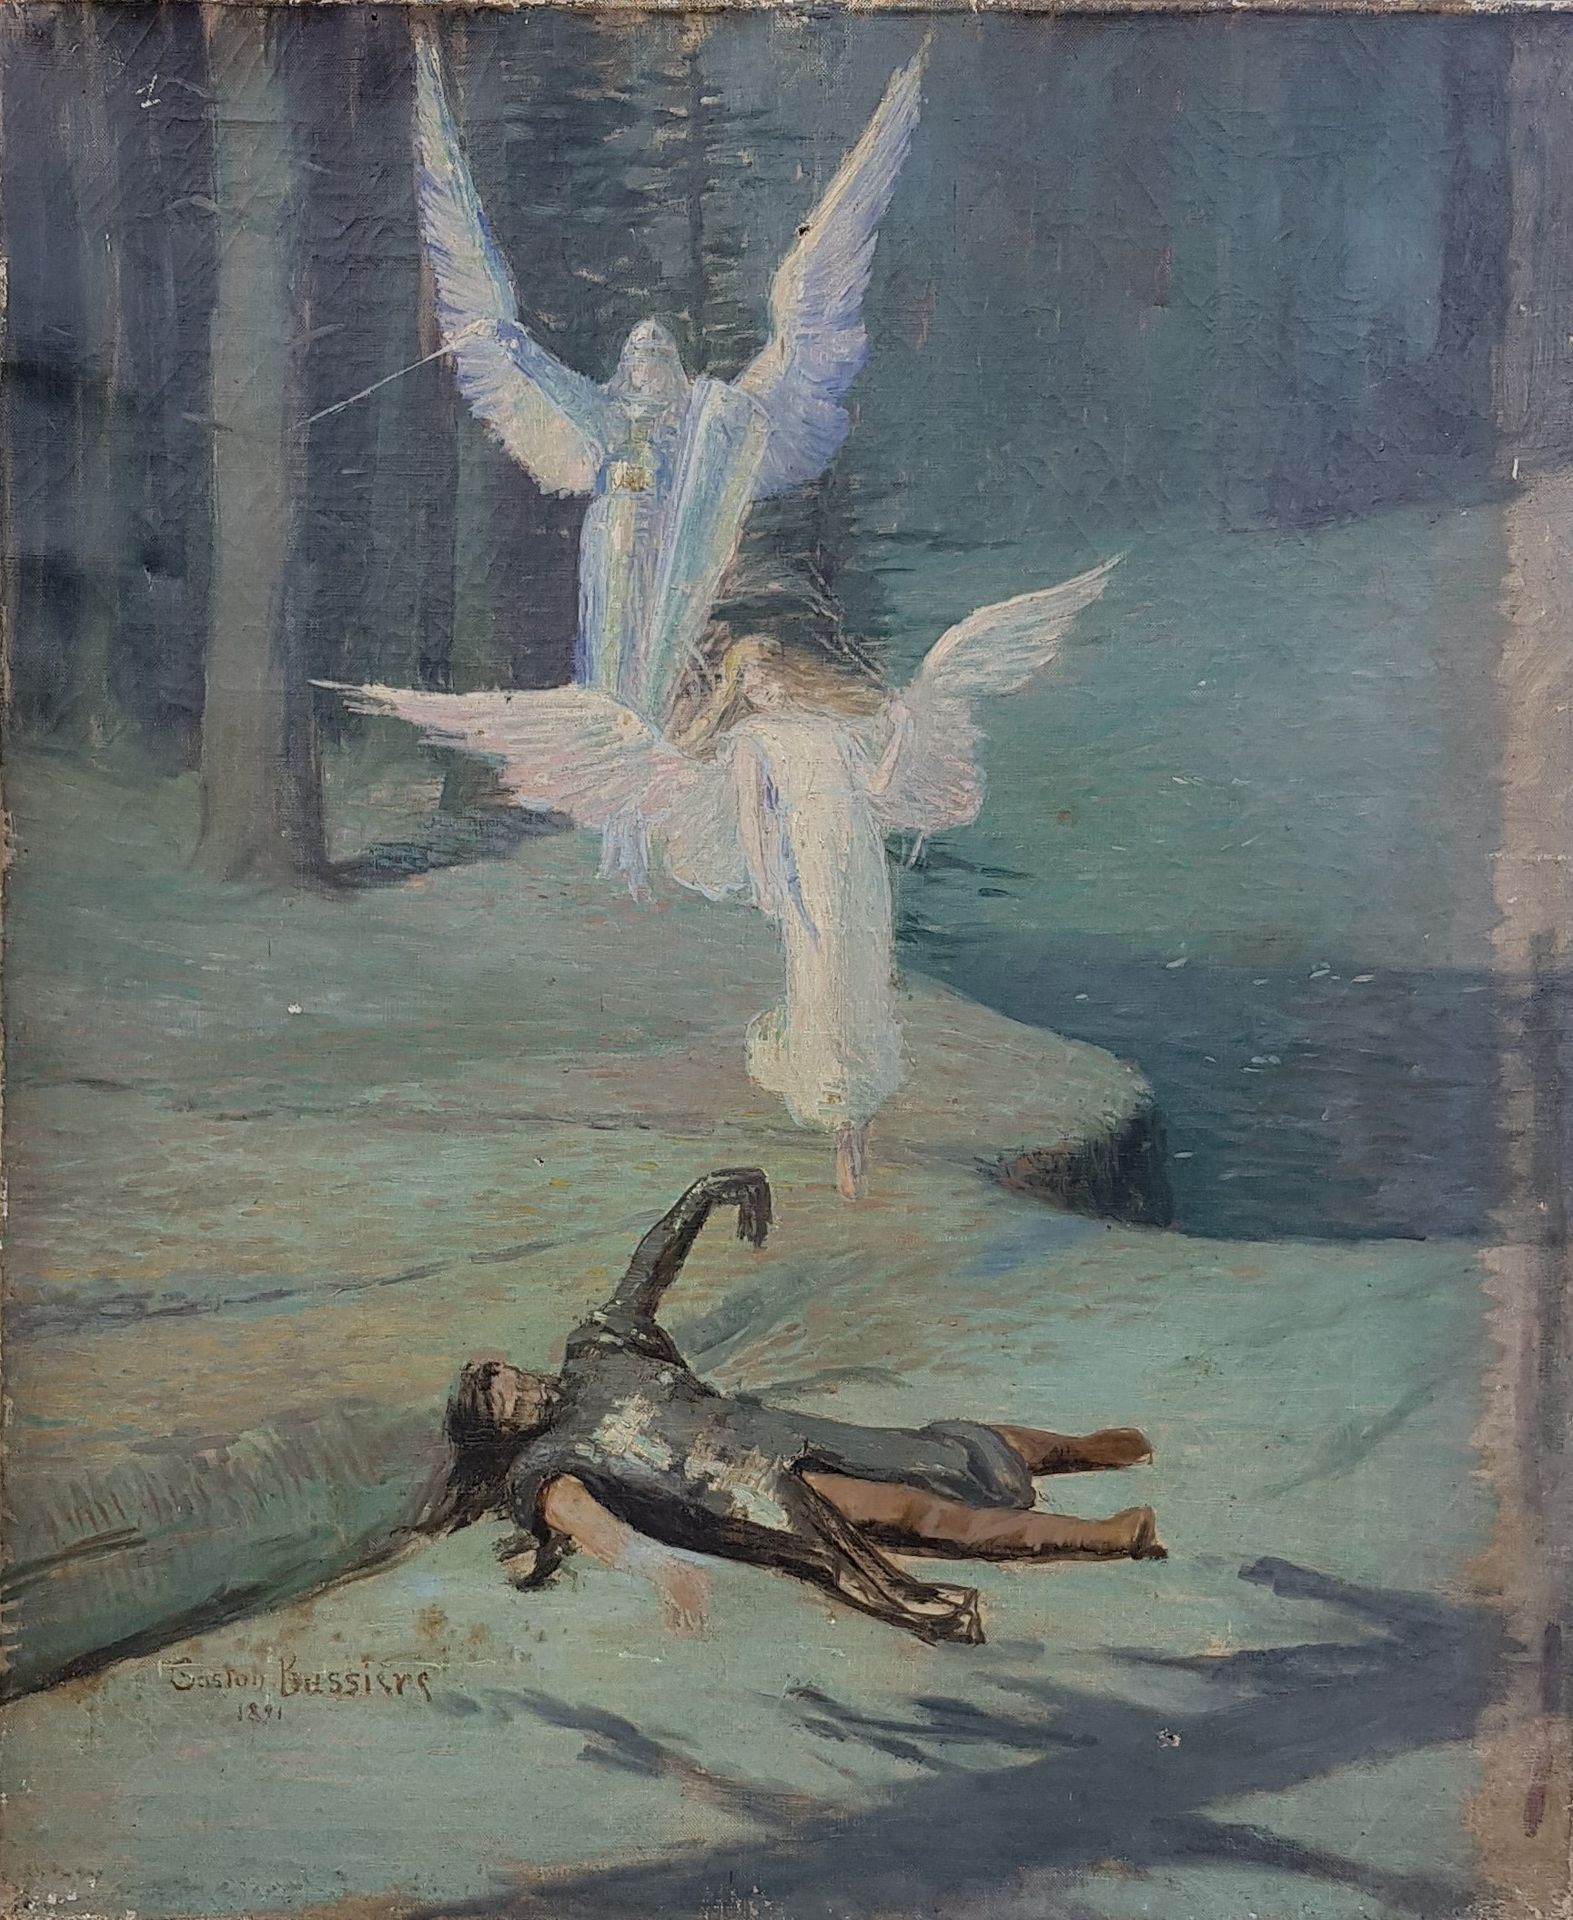 BUSSIÈRE Gaston (1868-1928) "Olio su tela firmato e datato 1891, 65 x 54 cm, per&hellip;